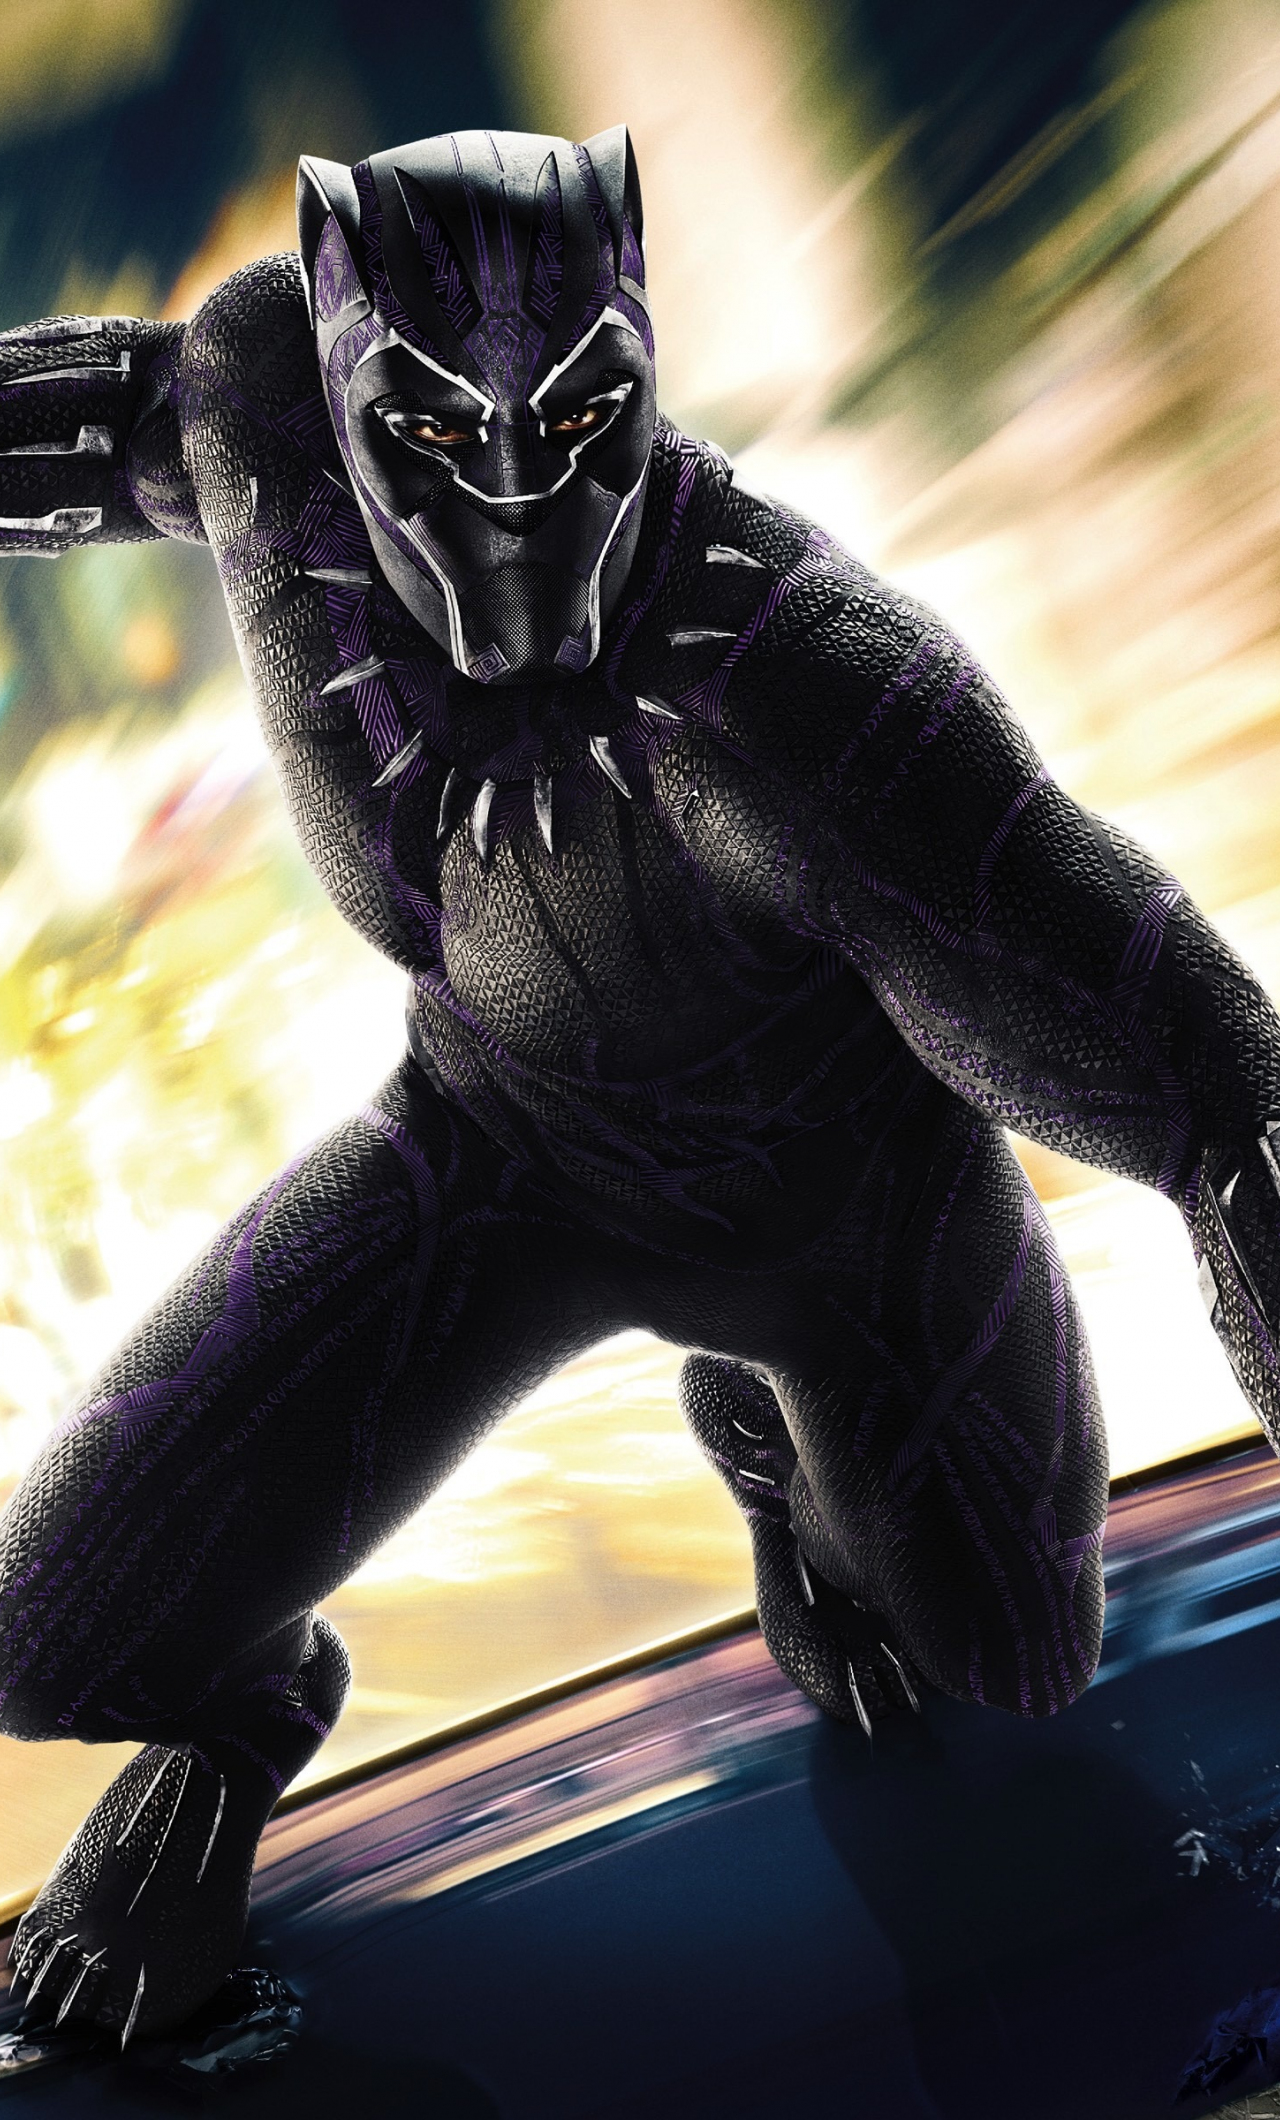 Download 1280x2120 Wallpaper Black Panther 2018 Movie Superhero